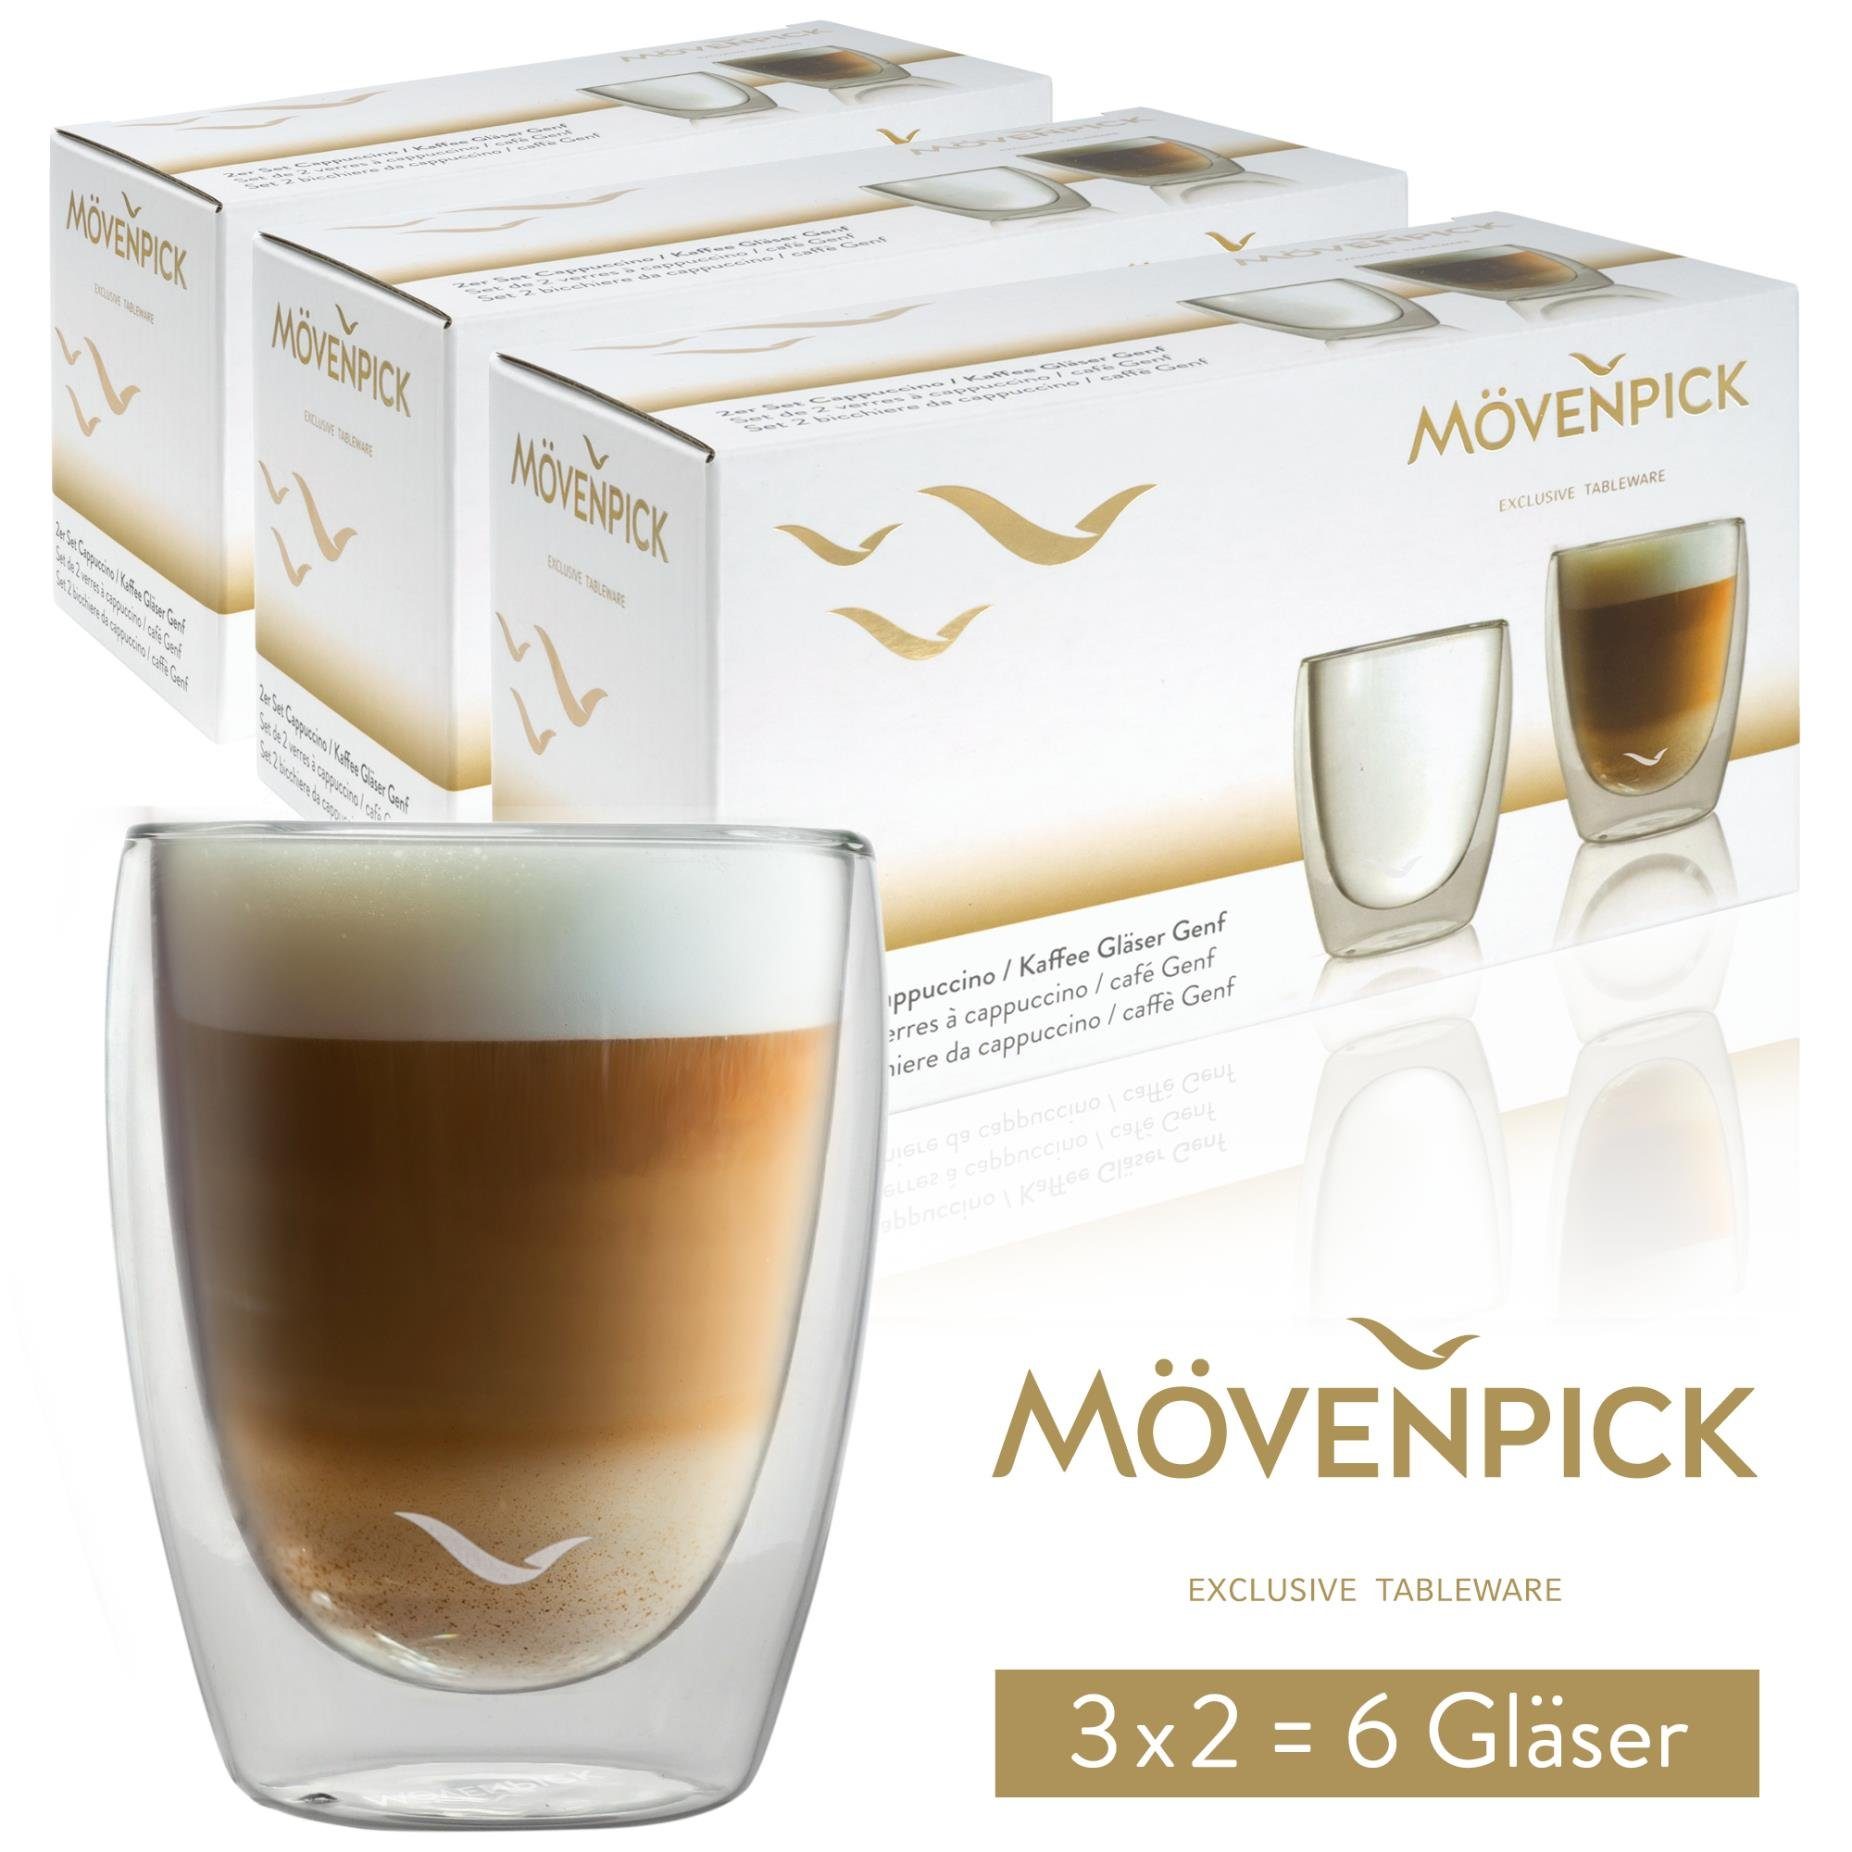 Mövenpick Gläser-Set 6 x Cappuccino Gläser, Borosilikatglas, 220 ml - Spülmaschinengeeignete doppelwandige Gläser - Thermogläser geeignet als Teegläser und Kaffeegläser